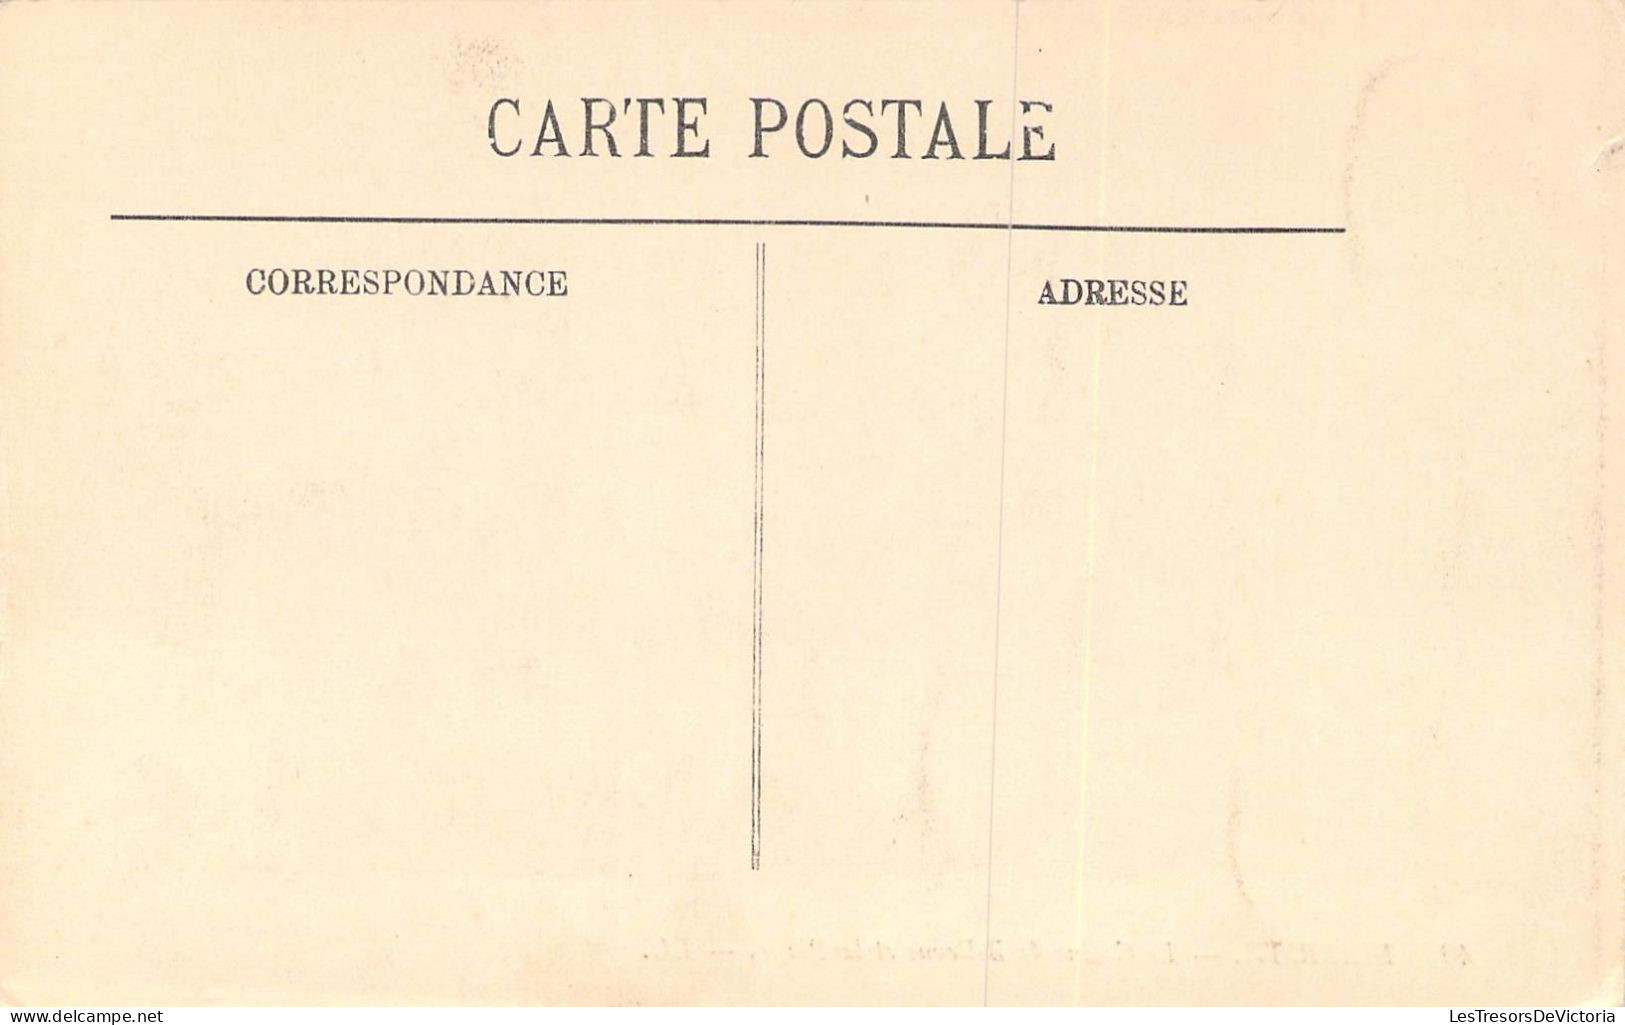 FRANCE - 64 - BIARRITZ - Le Casino De Bellevue Et La Plage - Carte Postale Ancienne - Biarritz